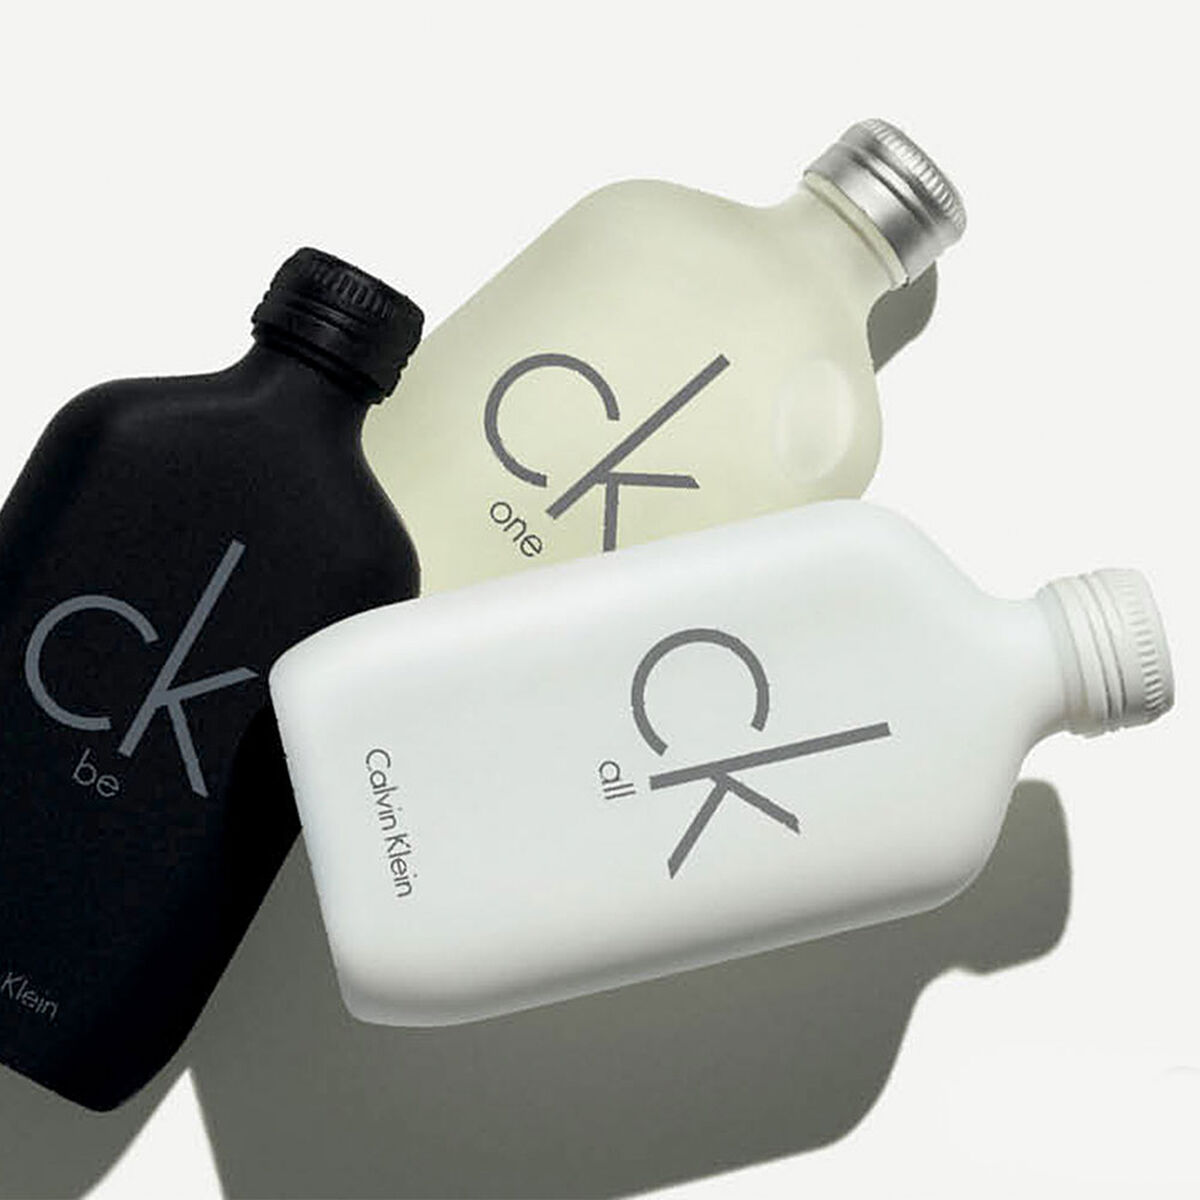 Perfume Calvin Klein Be EDT 100 ml